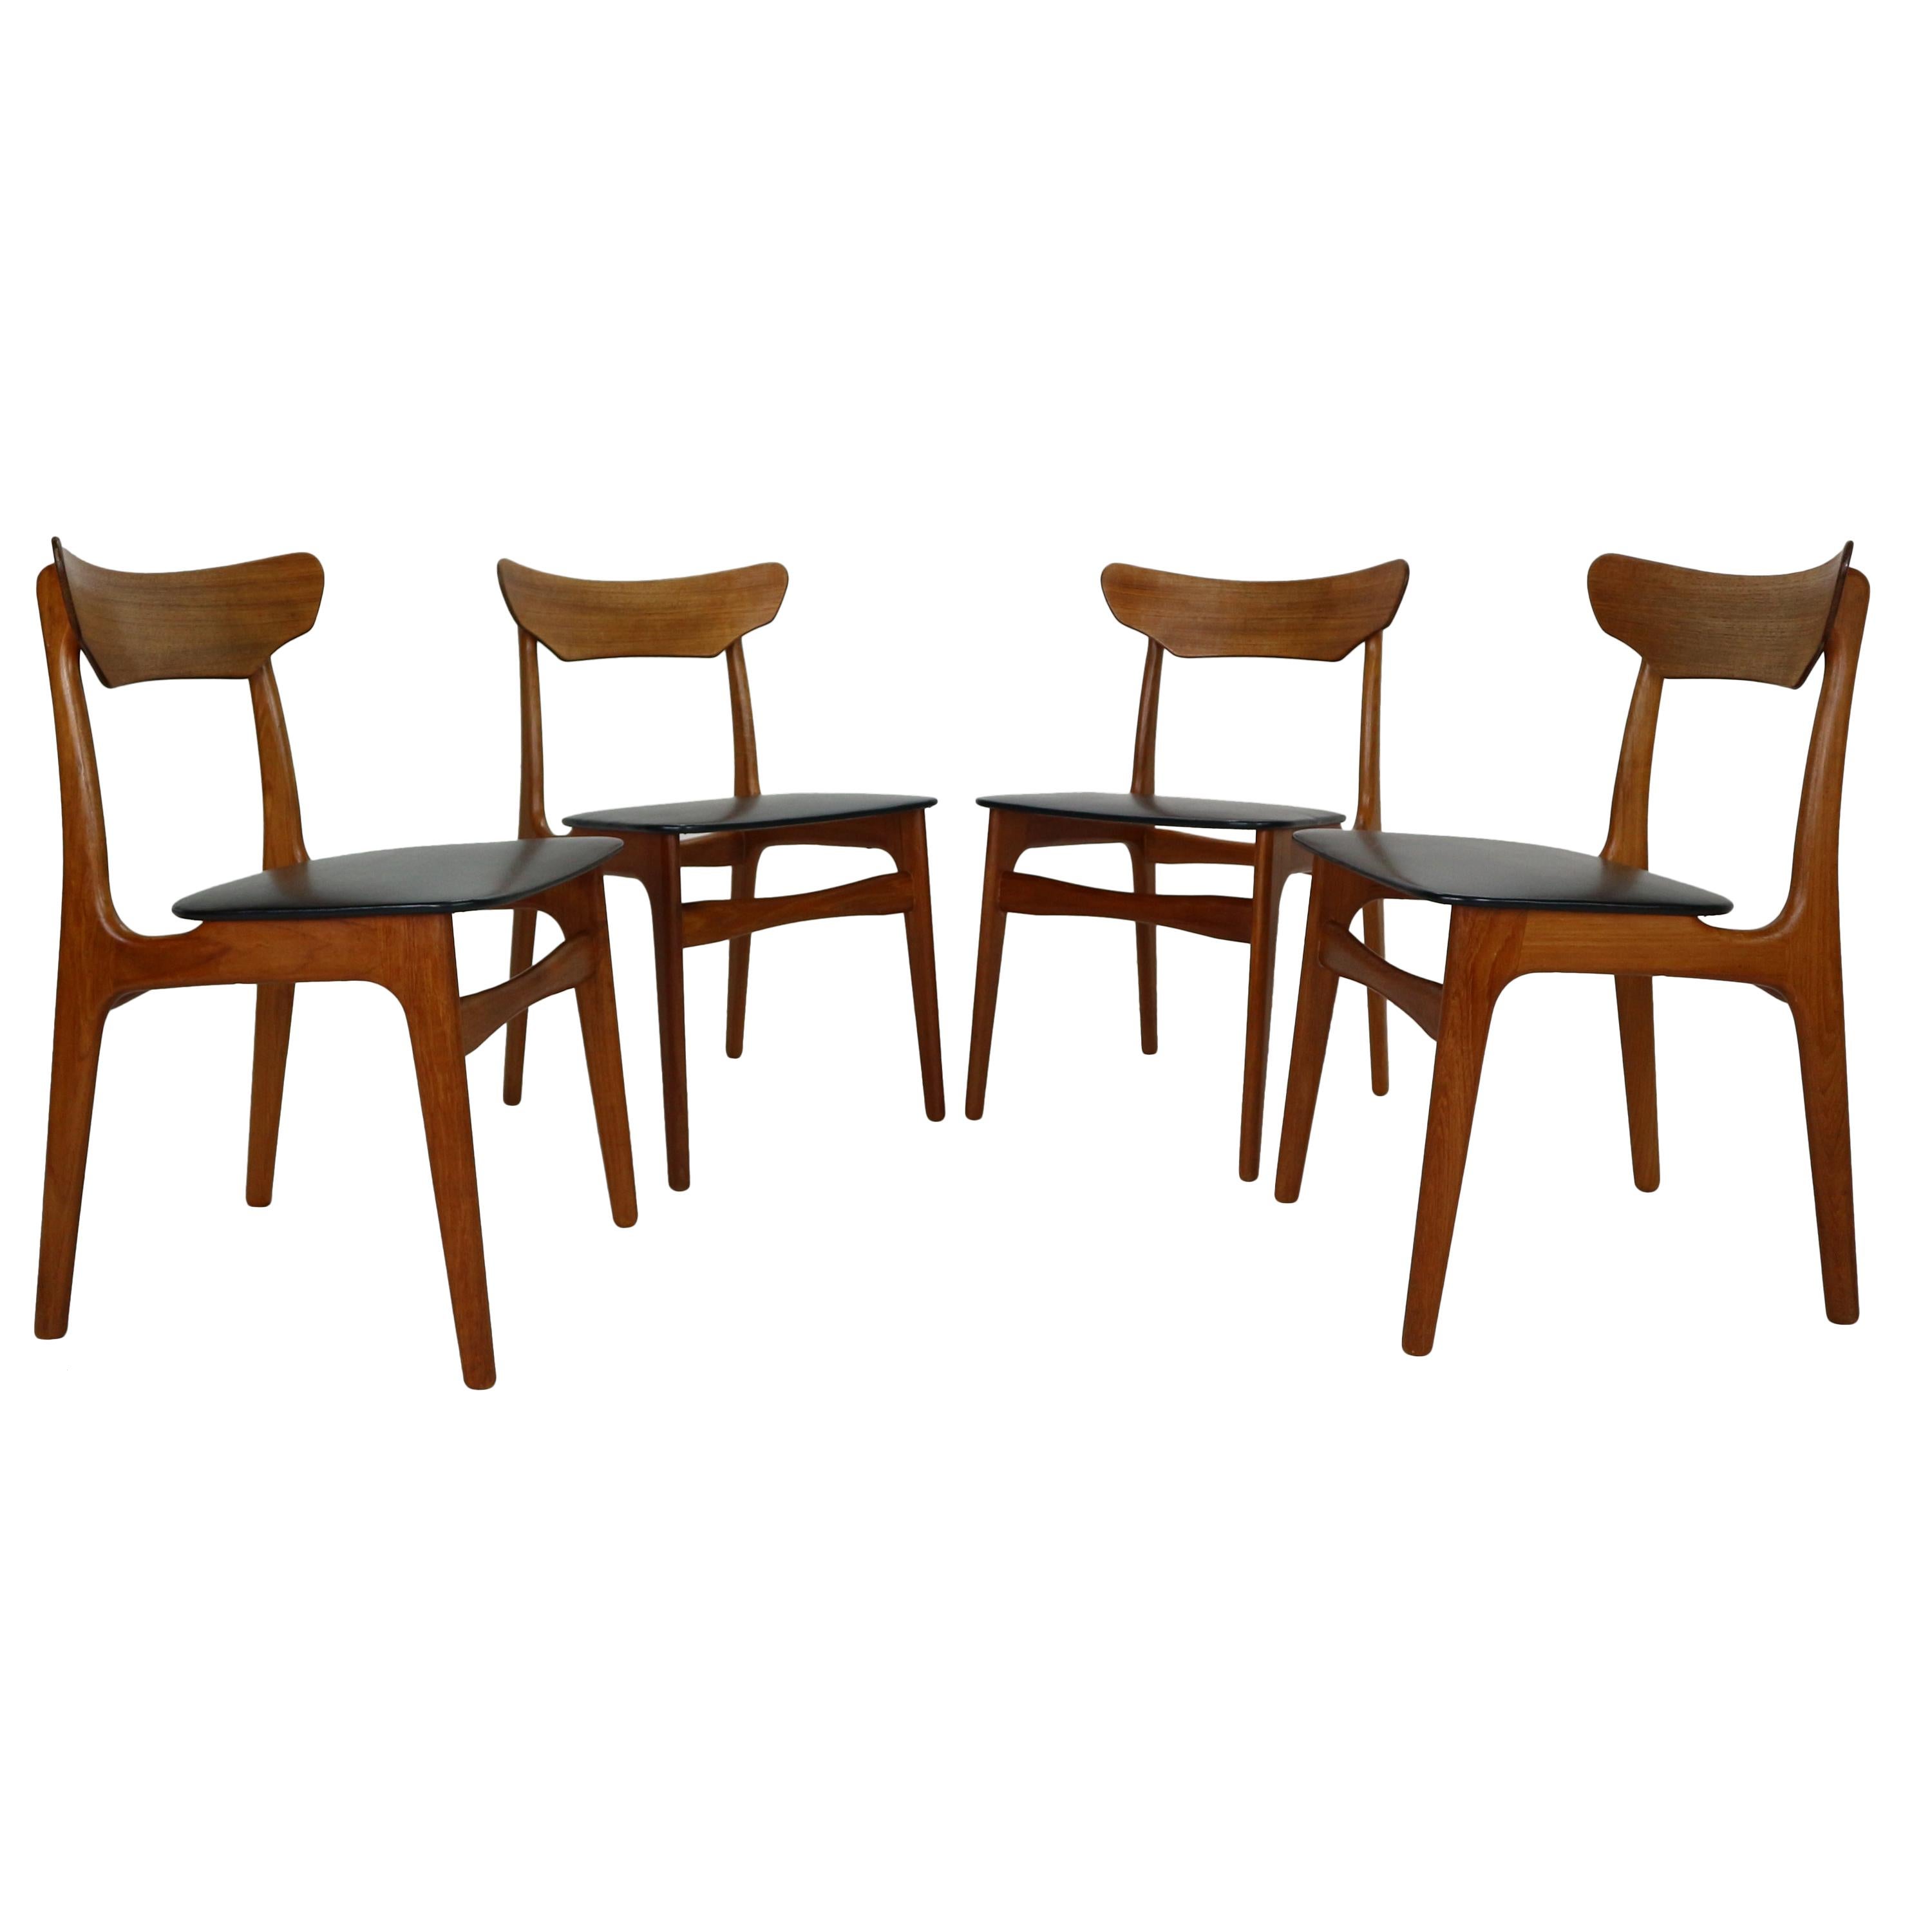 Schiønning & Elgaard for Randers Møbelfabrik Set of 4 Teak Dining Room Chairs